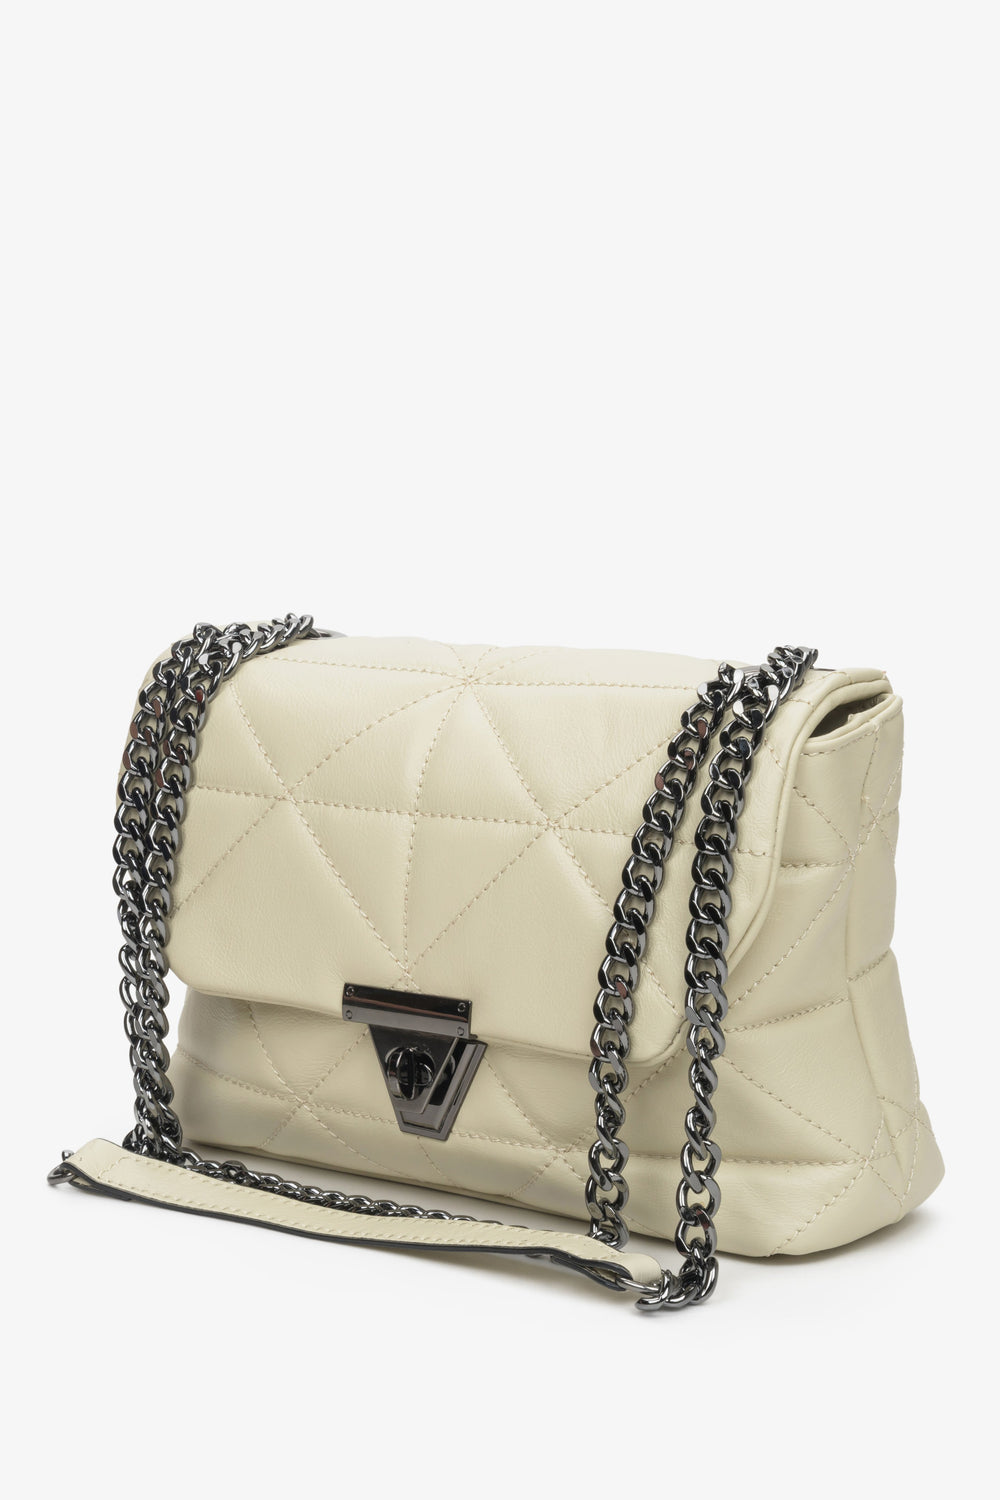 Small Women's Light Beige Handbag Genuine Leather Estro ER00108874.